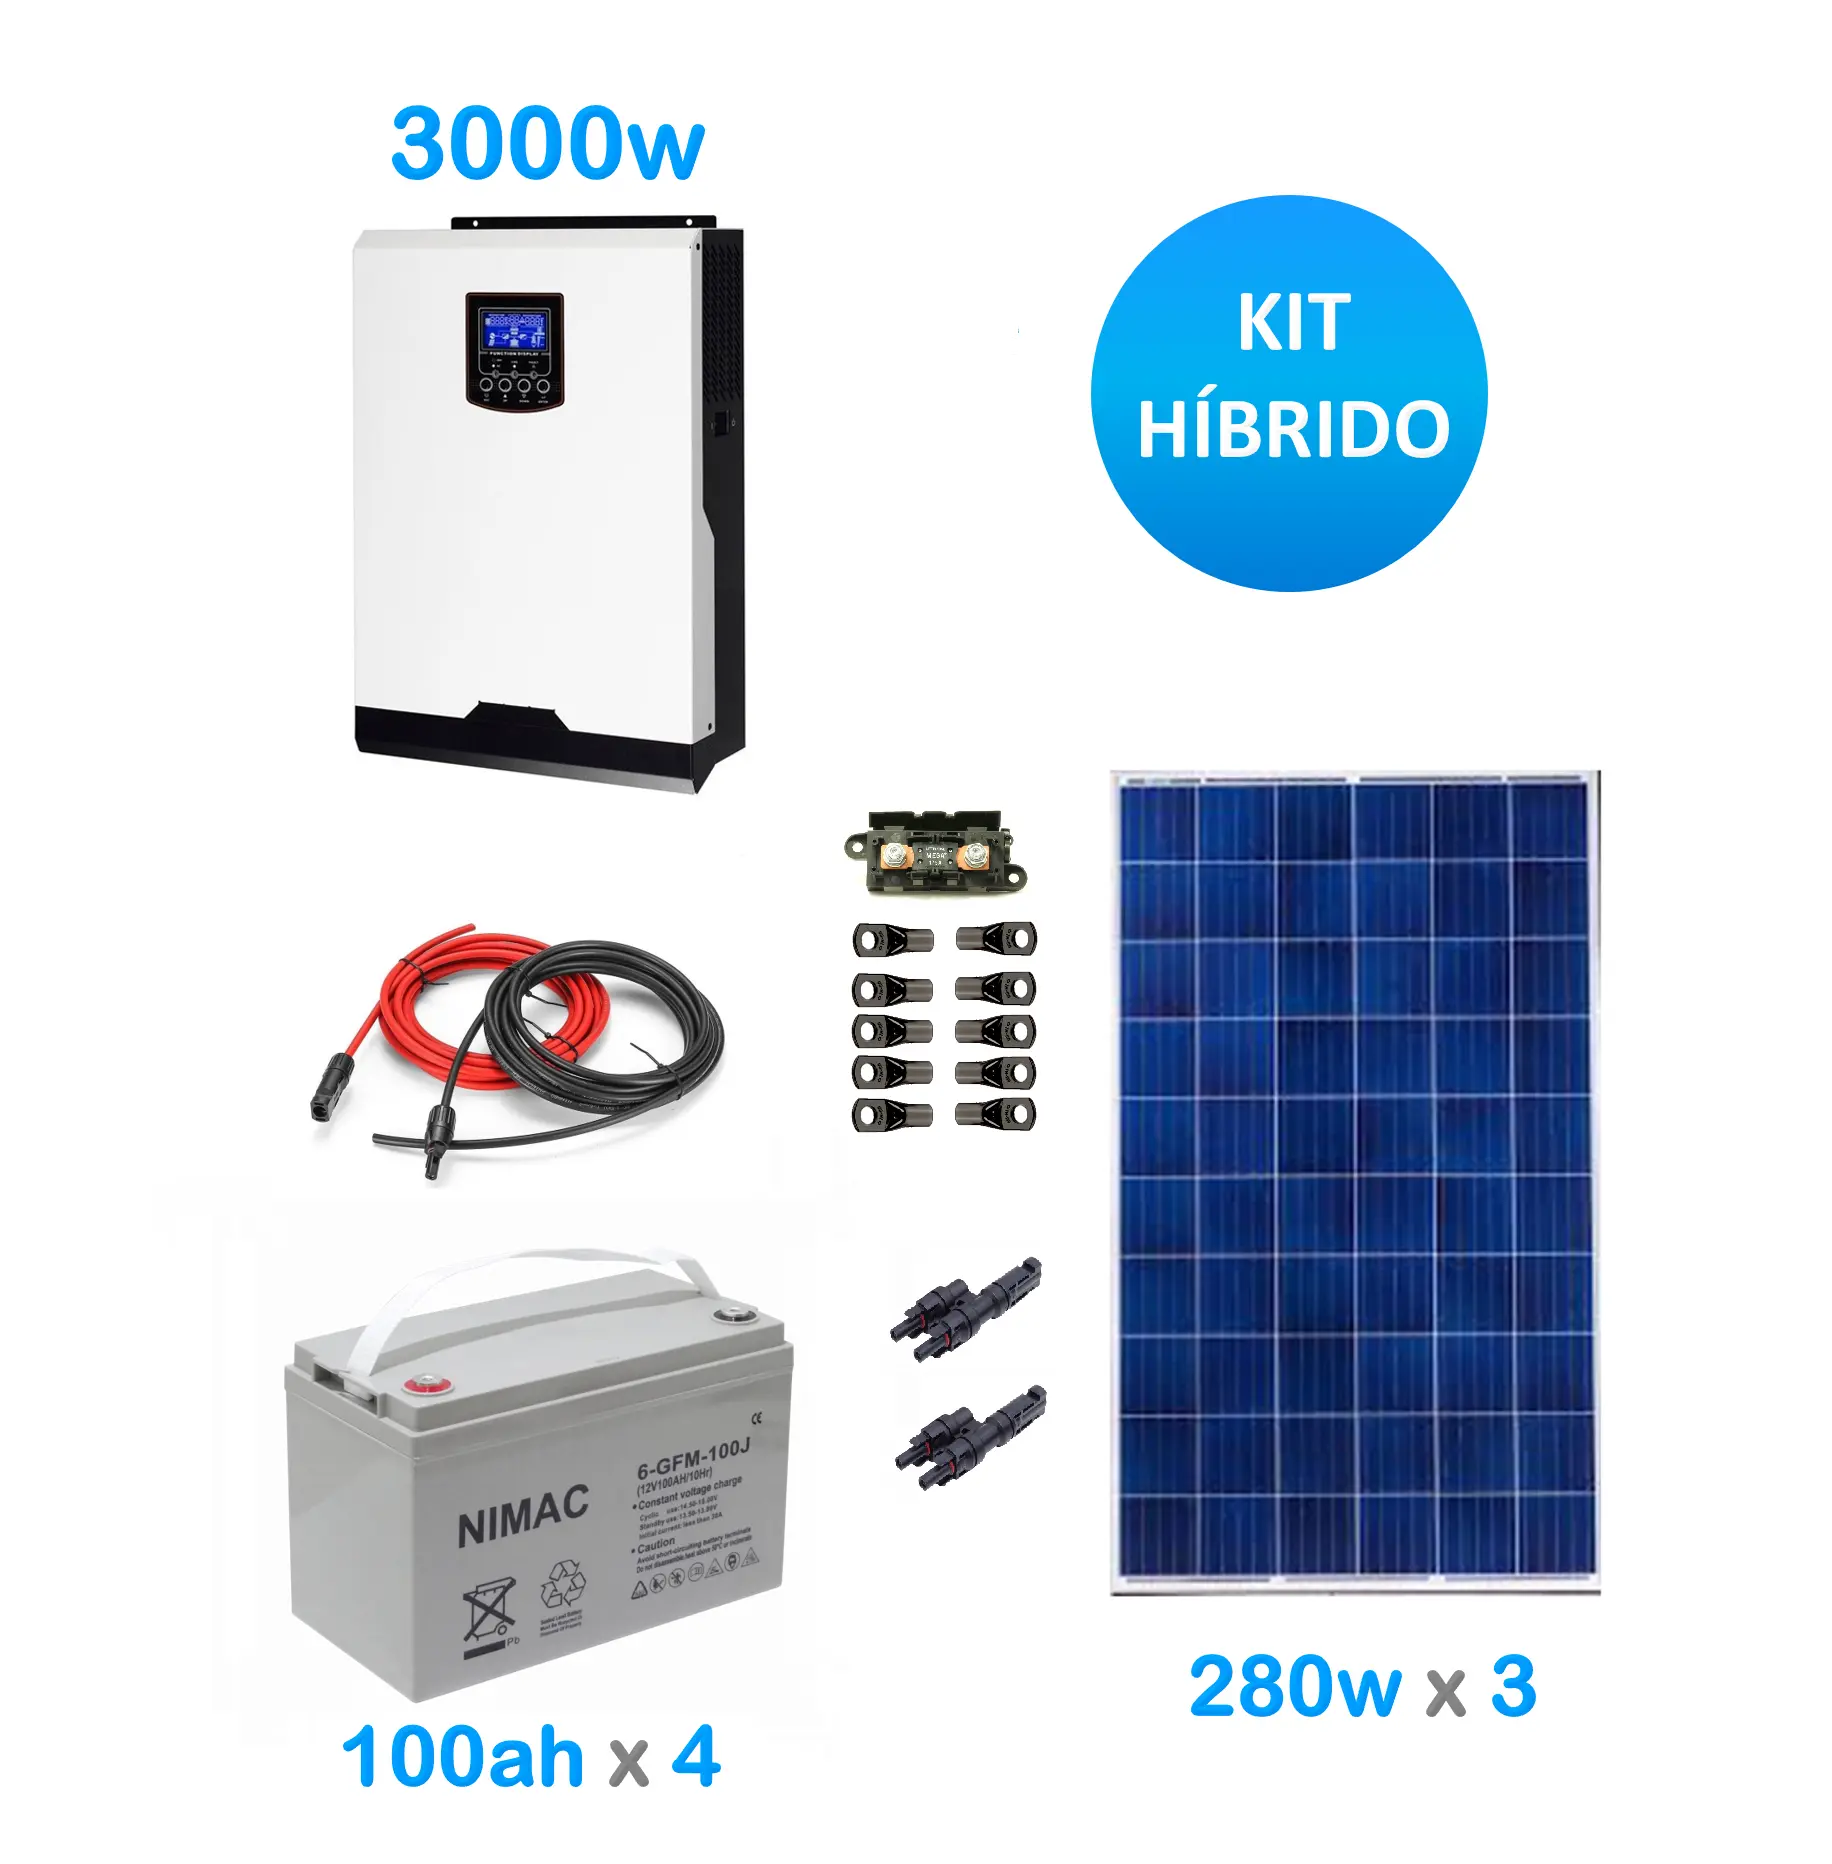 kit placa solar hibridos - Cómo funciona un inversor solar híbrido